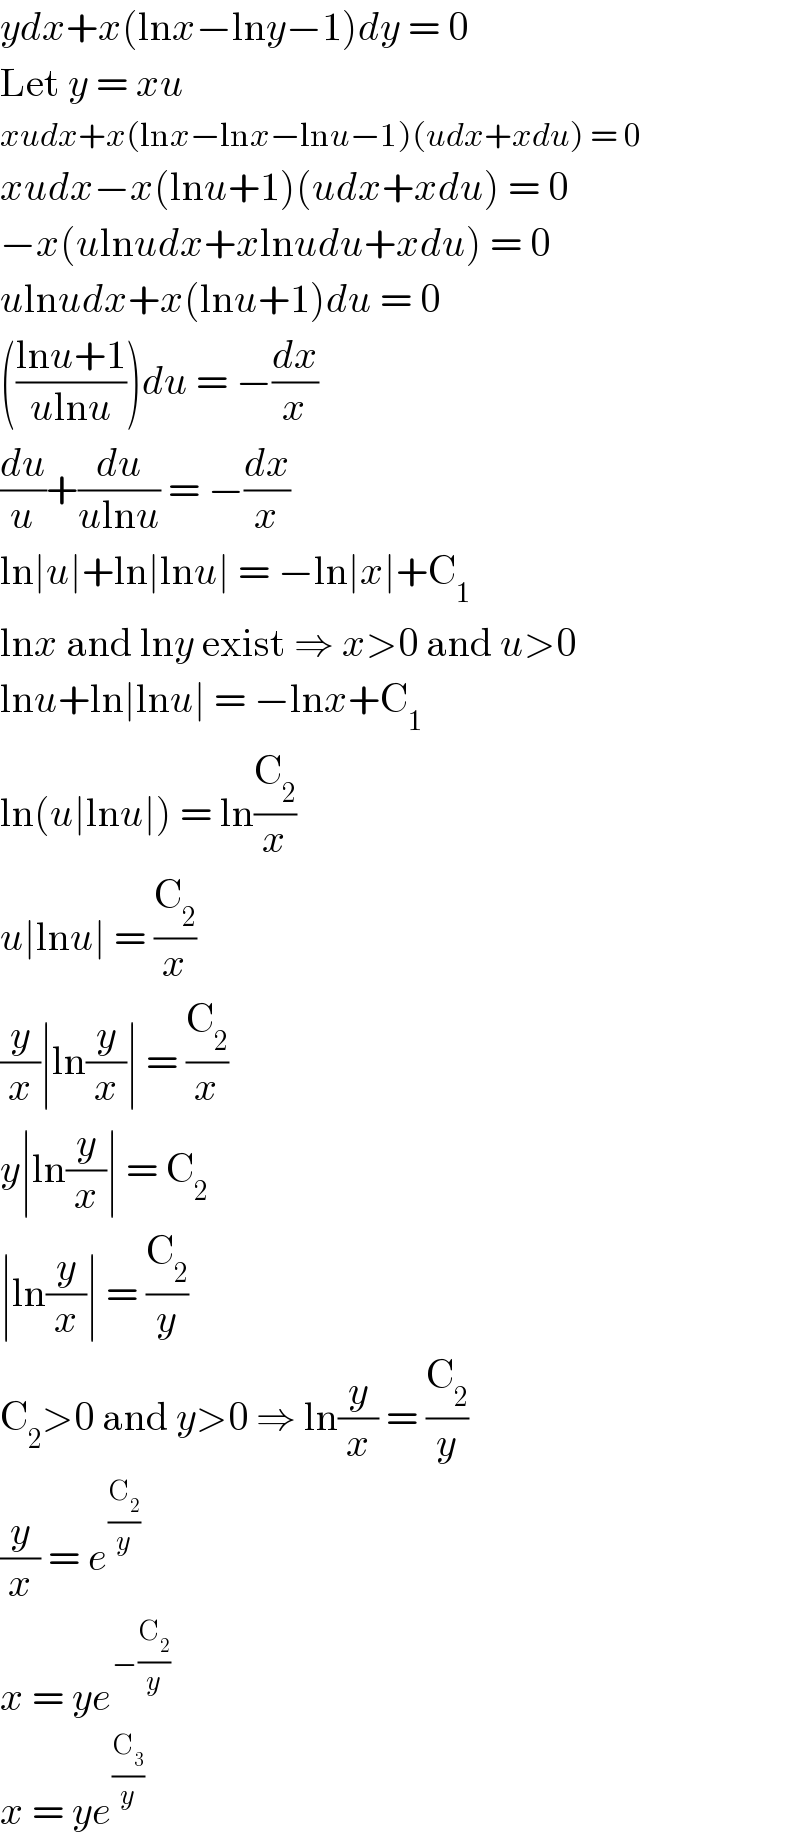 ydx+x(lnx−lny−1)dy = 0  Let y = xu  xudx+x(lnx−lnx−lnu−1)(udx+xdu) = 0  xudx−x(lnu+1)(udx+xdu) = 0  −x(ulnudx+xlnudu+xdu) = 0  ulnudx+x(lnu+1)du = 0  (((lnu+1)/(ulnu)))du = −(dx/x)  (du/u)+(du/(ulnu)) = −(dx/x)  ln∣u∣+ln∣lnu∣ = −ln∣x∣+C_1   lnx and lny exist ⇒ x>0 and u>0  lnu+ln∣lnu∣ = −lnx+C_1   ln(u∣lnu∣) = ln(C_2 /x)  u∣lnu∣ = (C_2 /x)  (y/x)∣ln(y/x)∣ = (C_2 /x)  y∣ln(y/x)∣ = C_2   ∣ln(y/x)∣ = (C_2 /y)  C_2 >0 and y>0 ⇒ ln(y/x) = (C_2 /y)  (y/x) = e^(C_2 /y)   x = ye^(−(C_2 /y))   x = ye^(C_3 /y)   